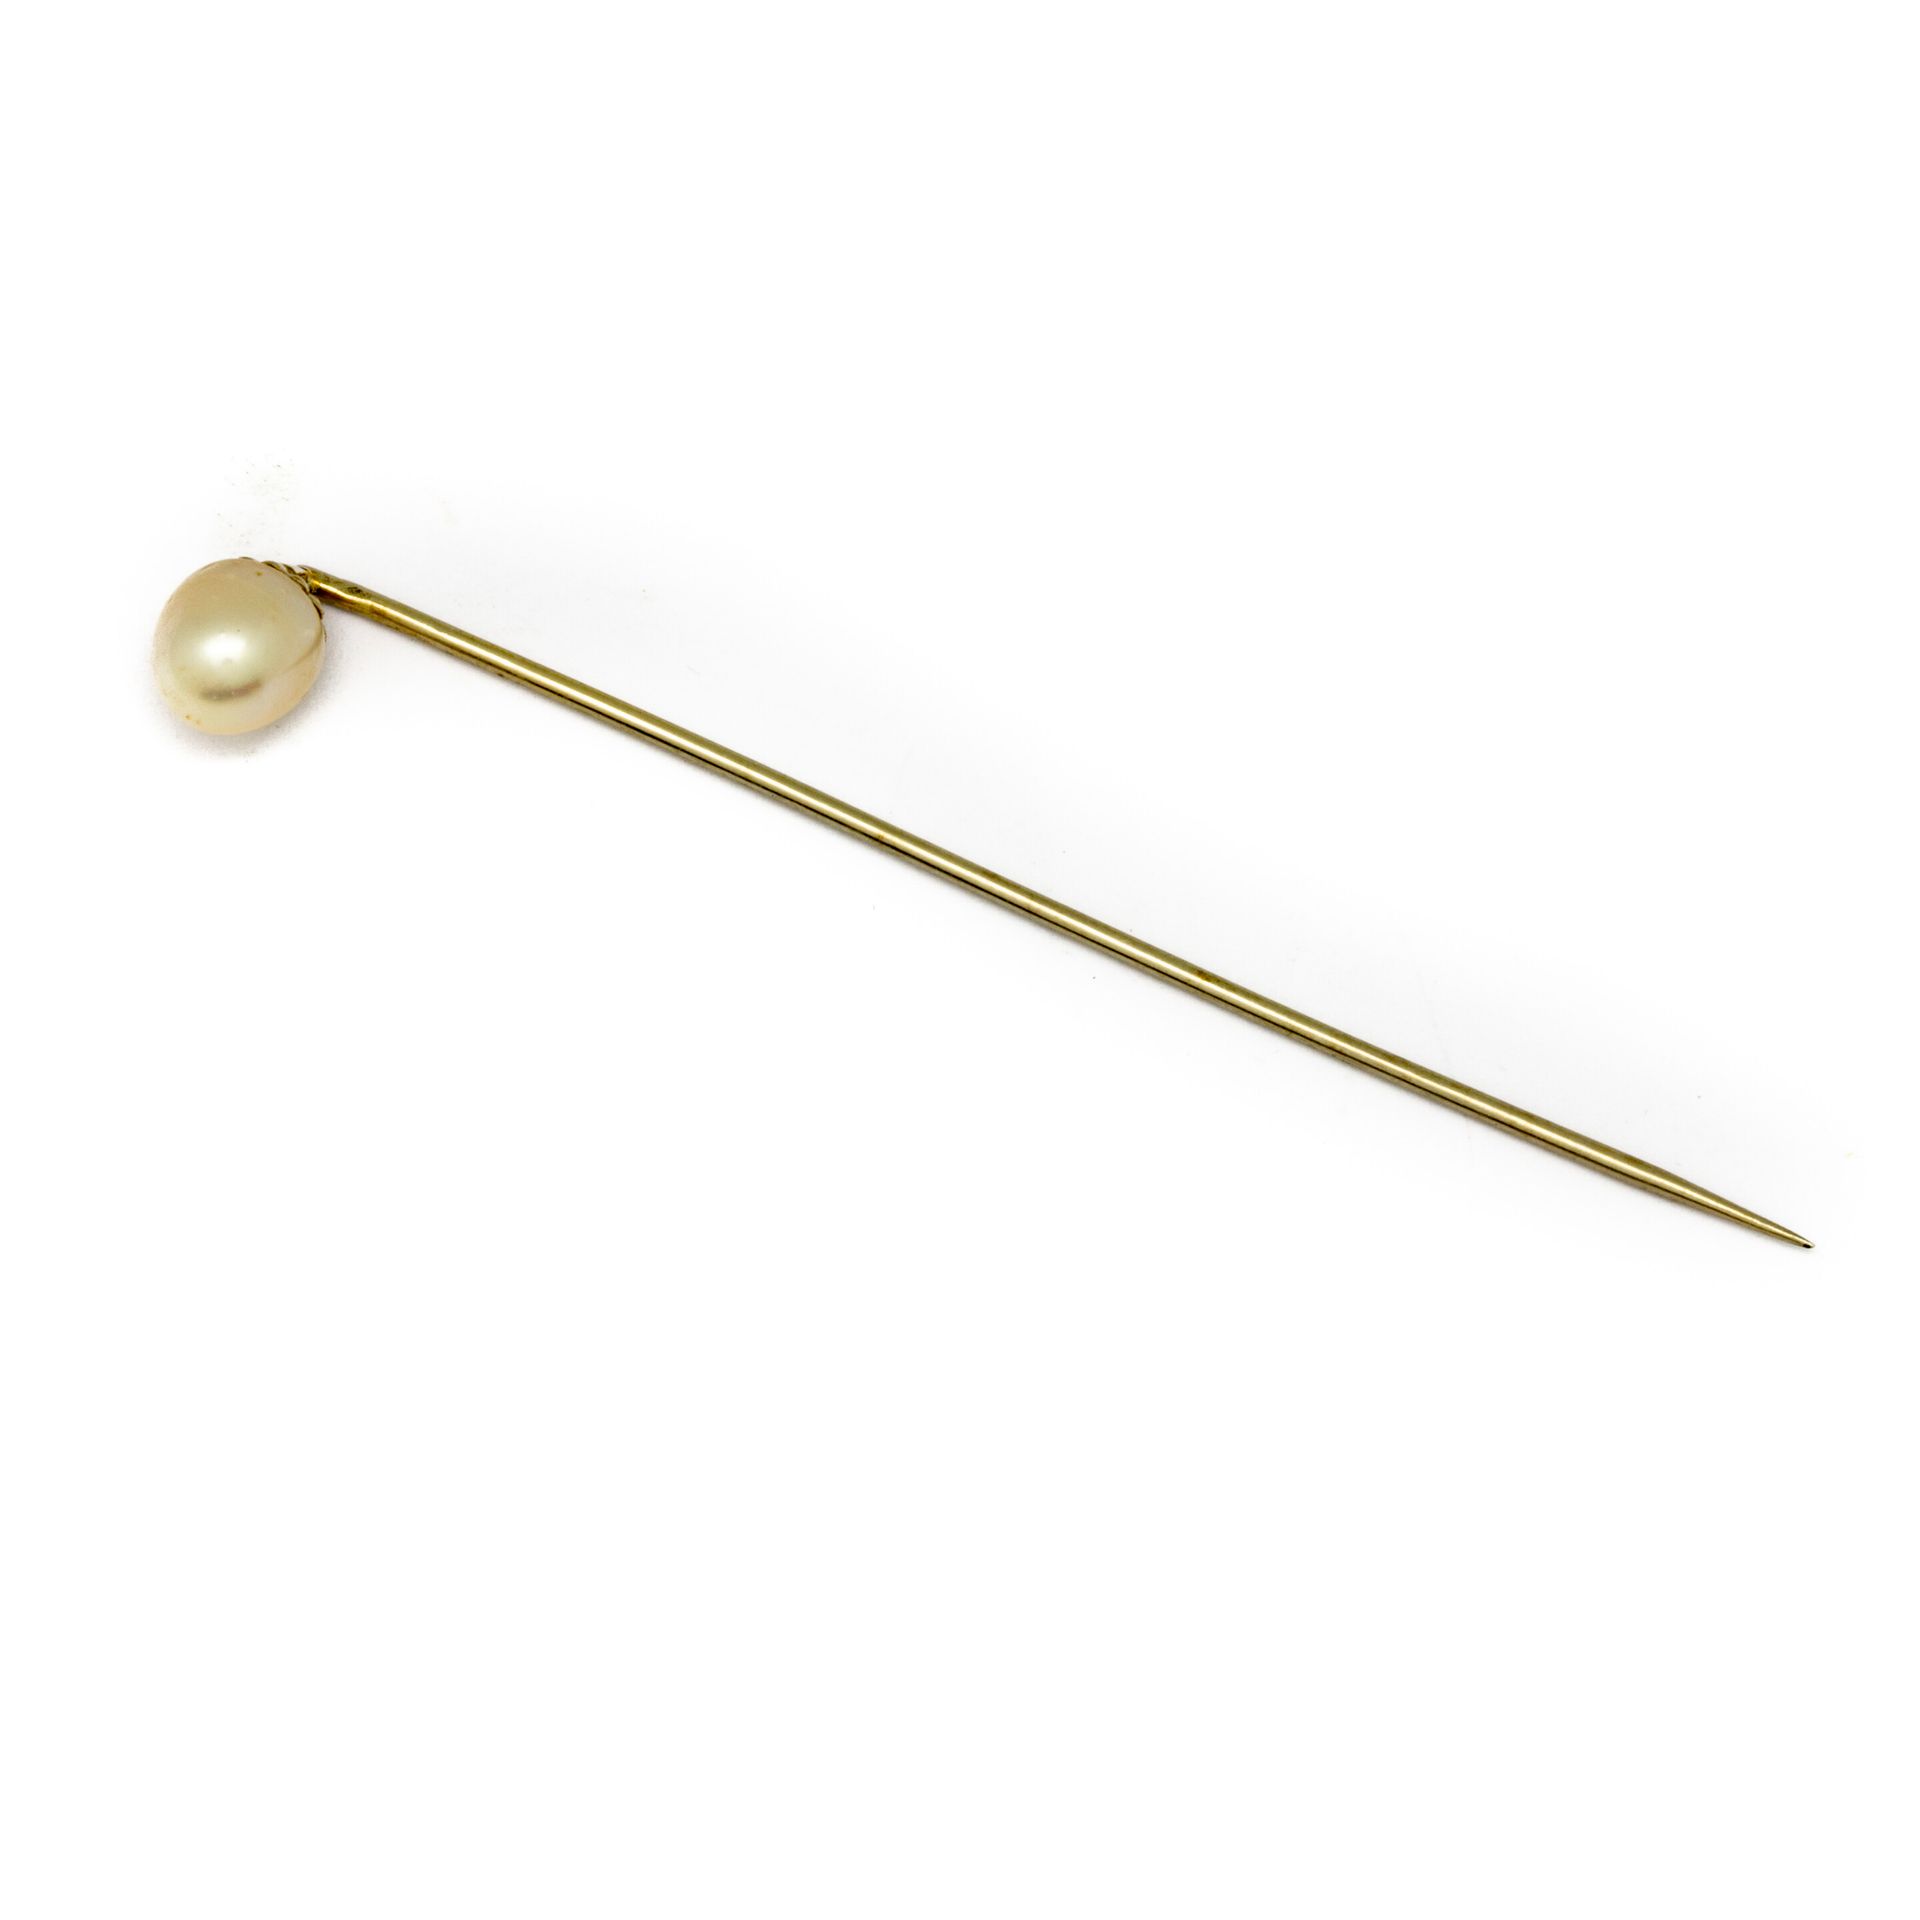 Null Alfiler de corbata de oro con una perla
Peso bruto: 1,6 g.